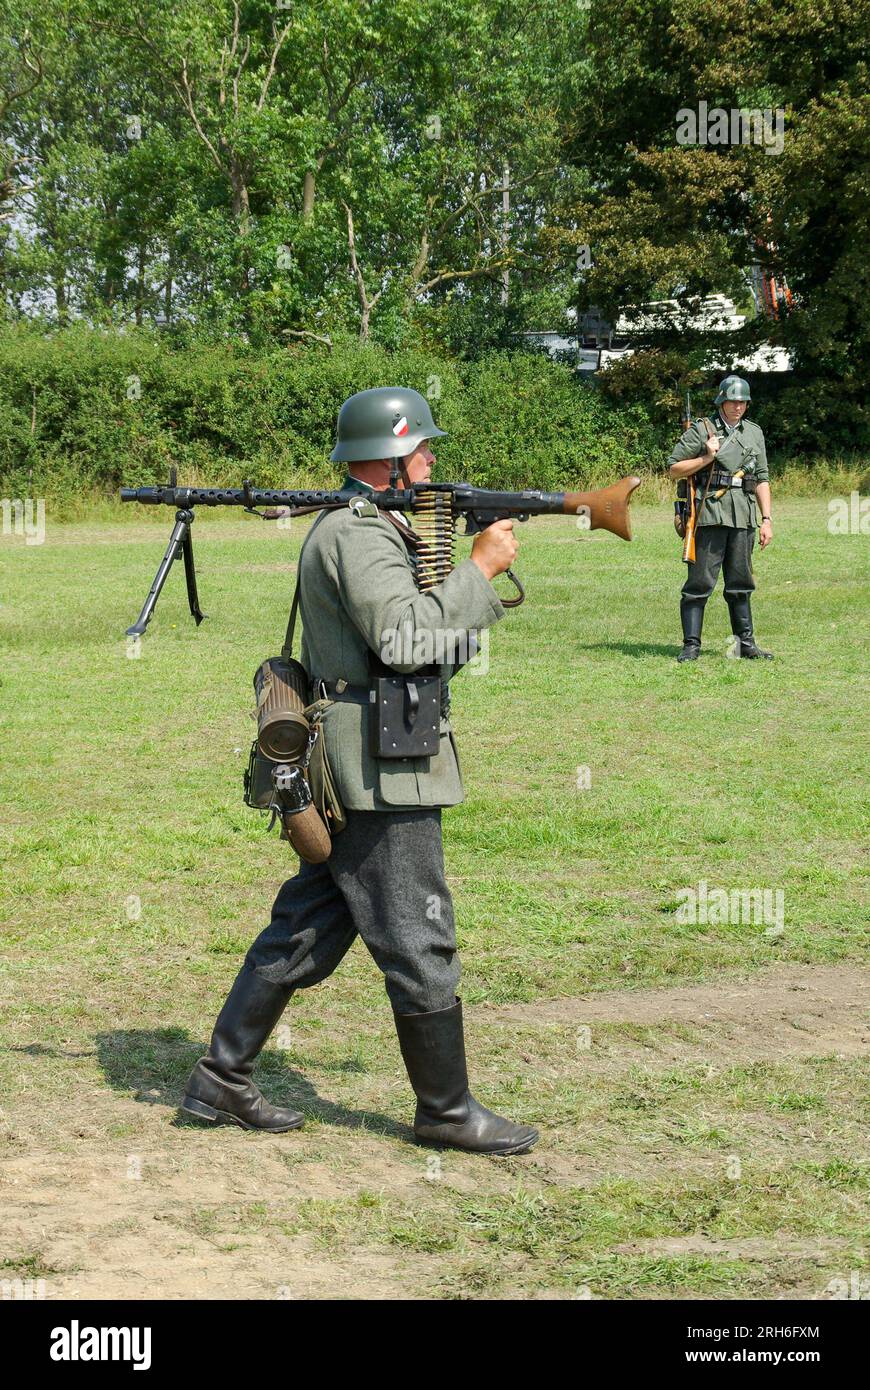 Re-enactor of Second World War German army soldier. Wehrmacht infantryman with Maschinengewehr 34, or machine gun 34, MG 34 and equipment Stock Photo